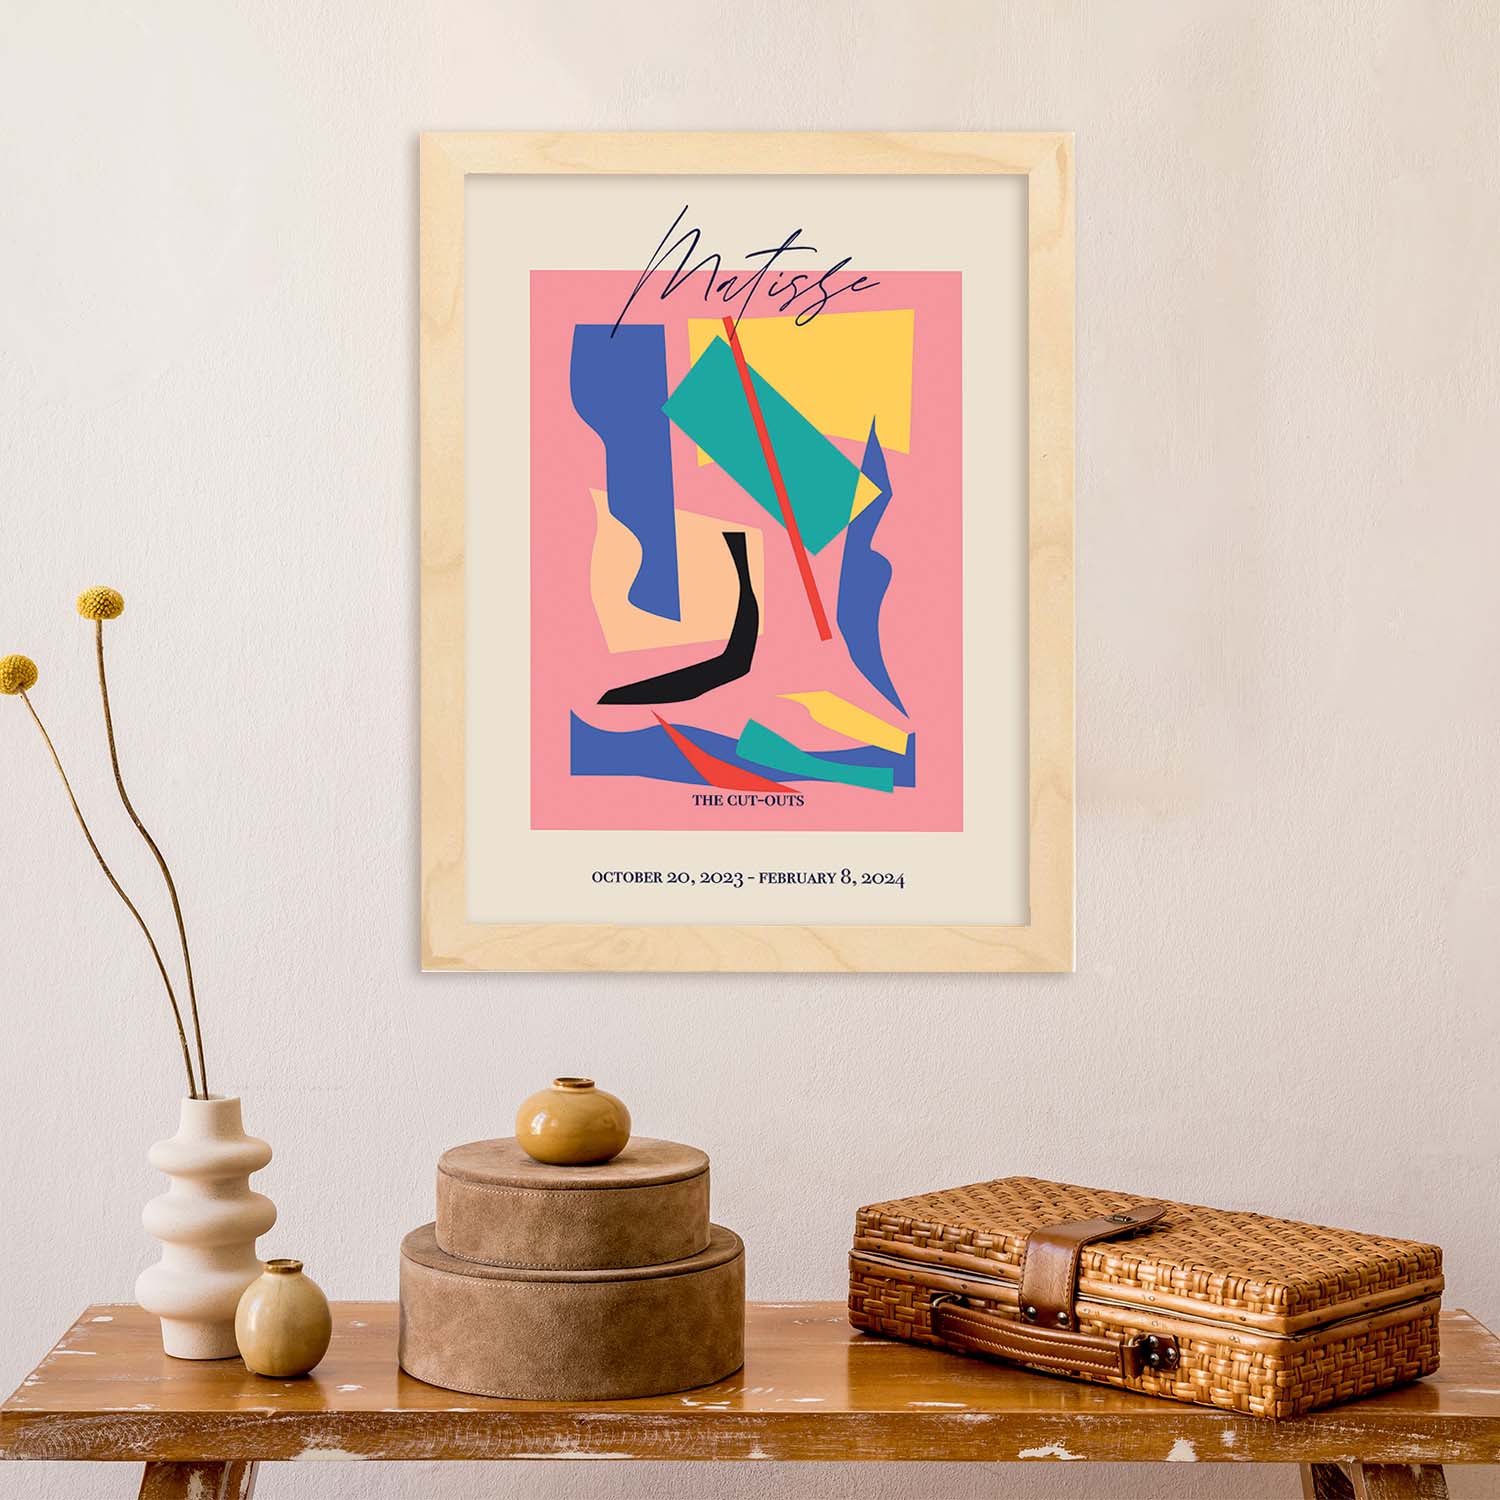 Lamina artistica decorativa con ilustración de Exposición Matisse 11 estilo fauvista-Artwork-Nacnic-Nacnic Estudio SL